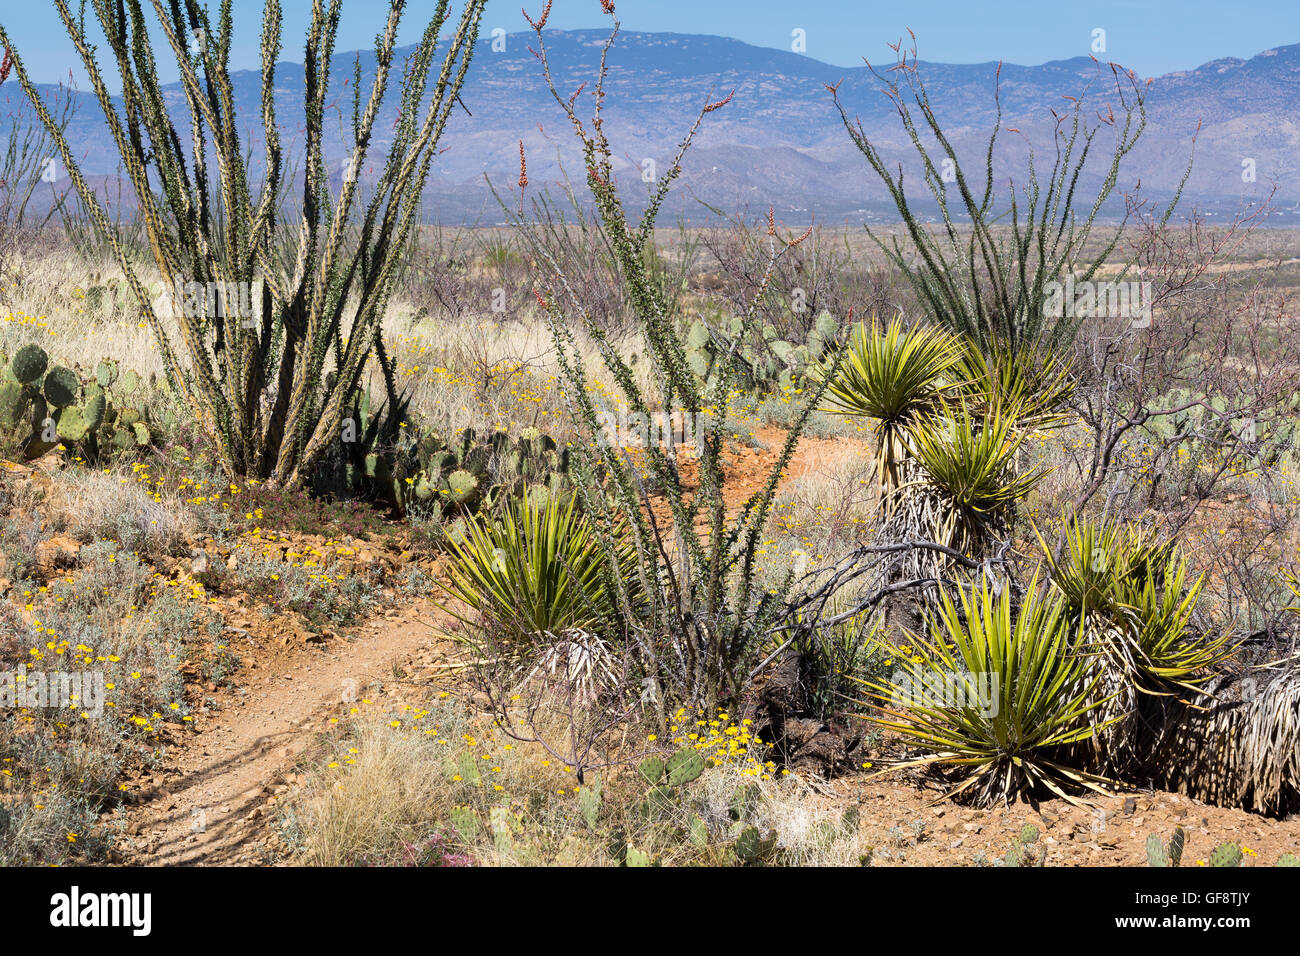 Le sentier de l'Arizona en passant par le yucca et la société. Las Cienegas National Conservation Area, Arizona Banque D'Images